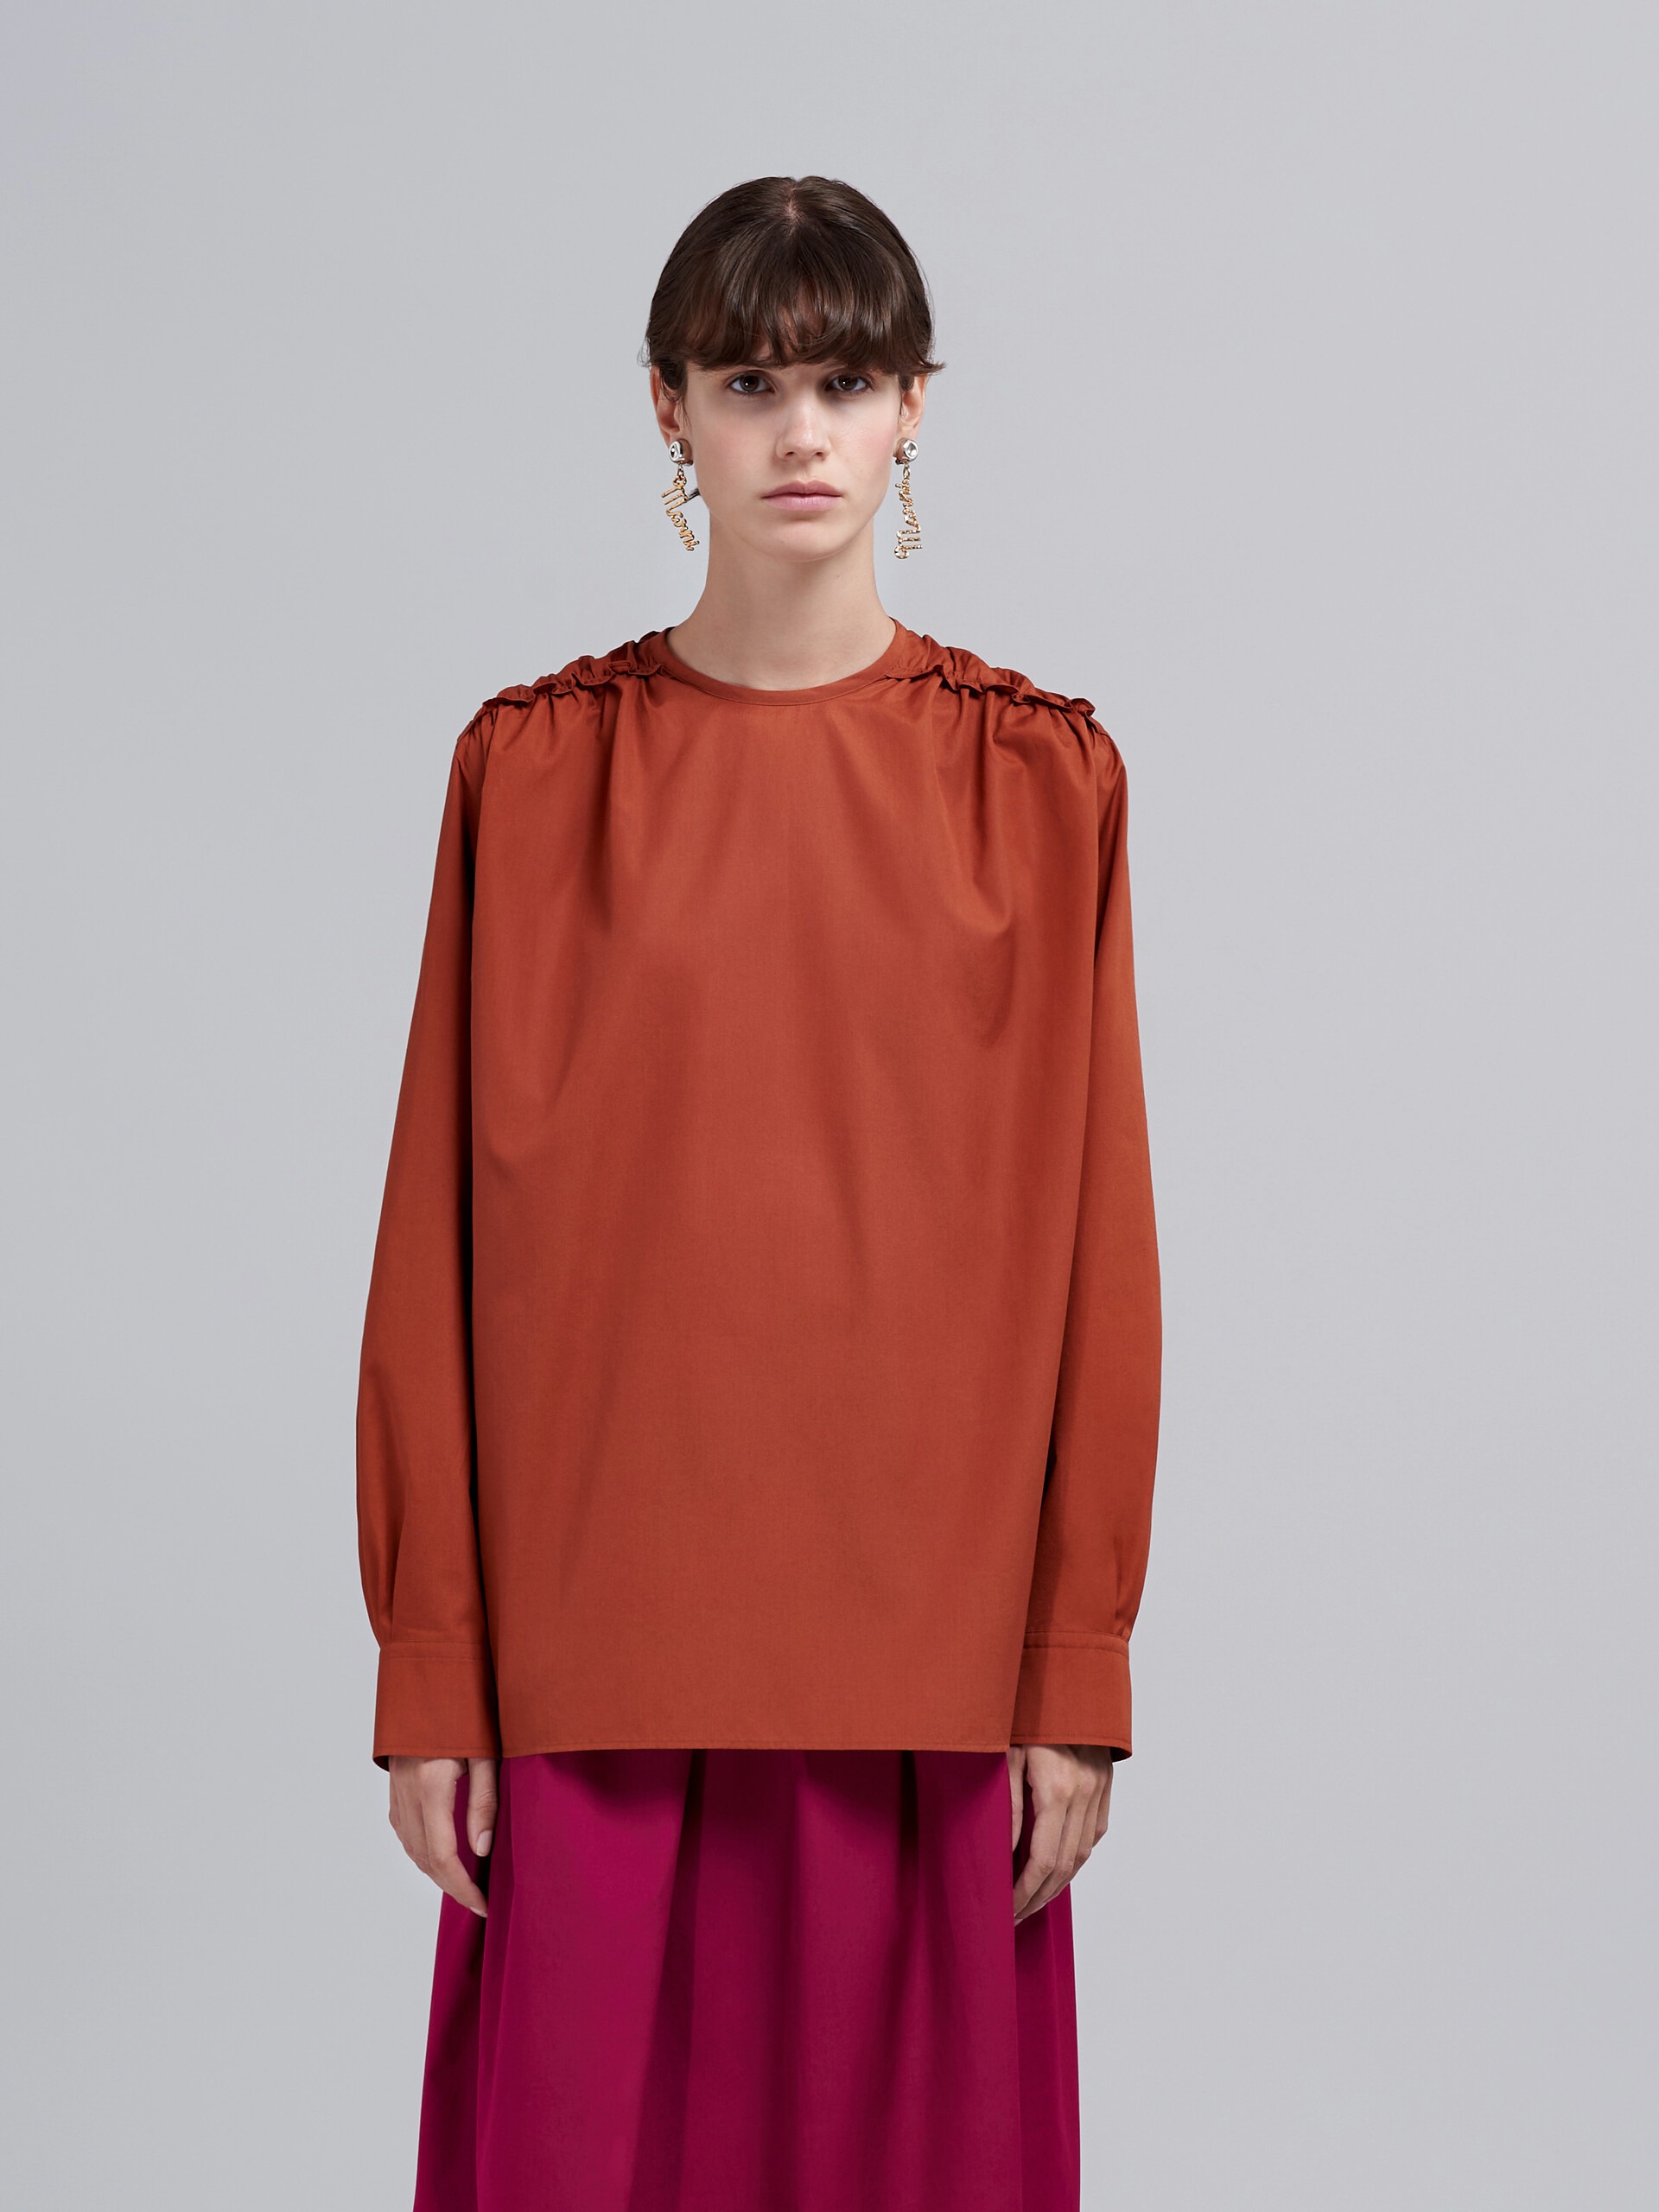 Camisa de popelina de algodón marrón - Camisas - Image 2